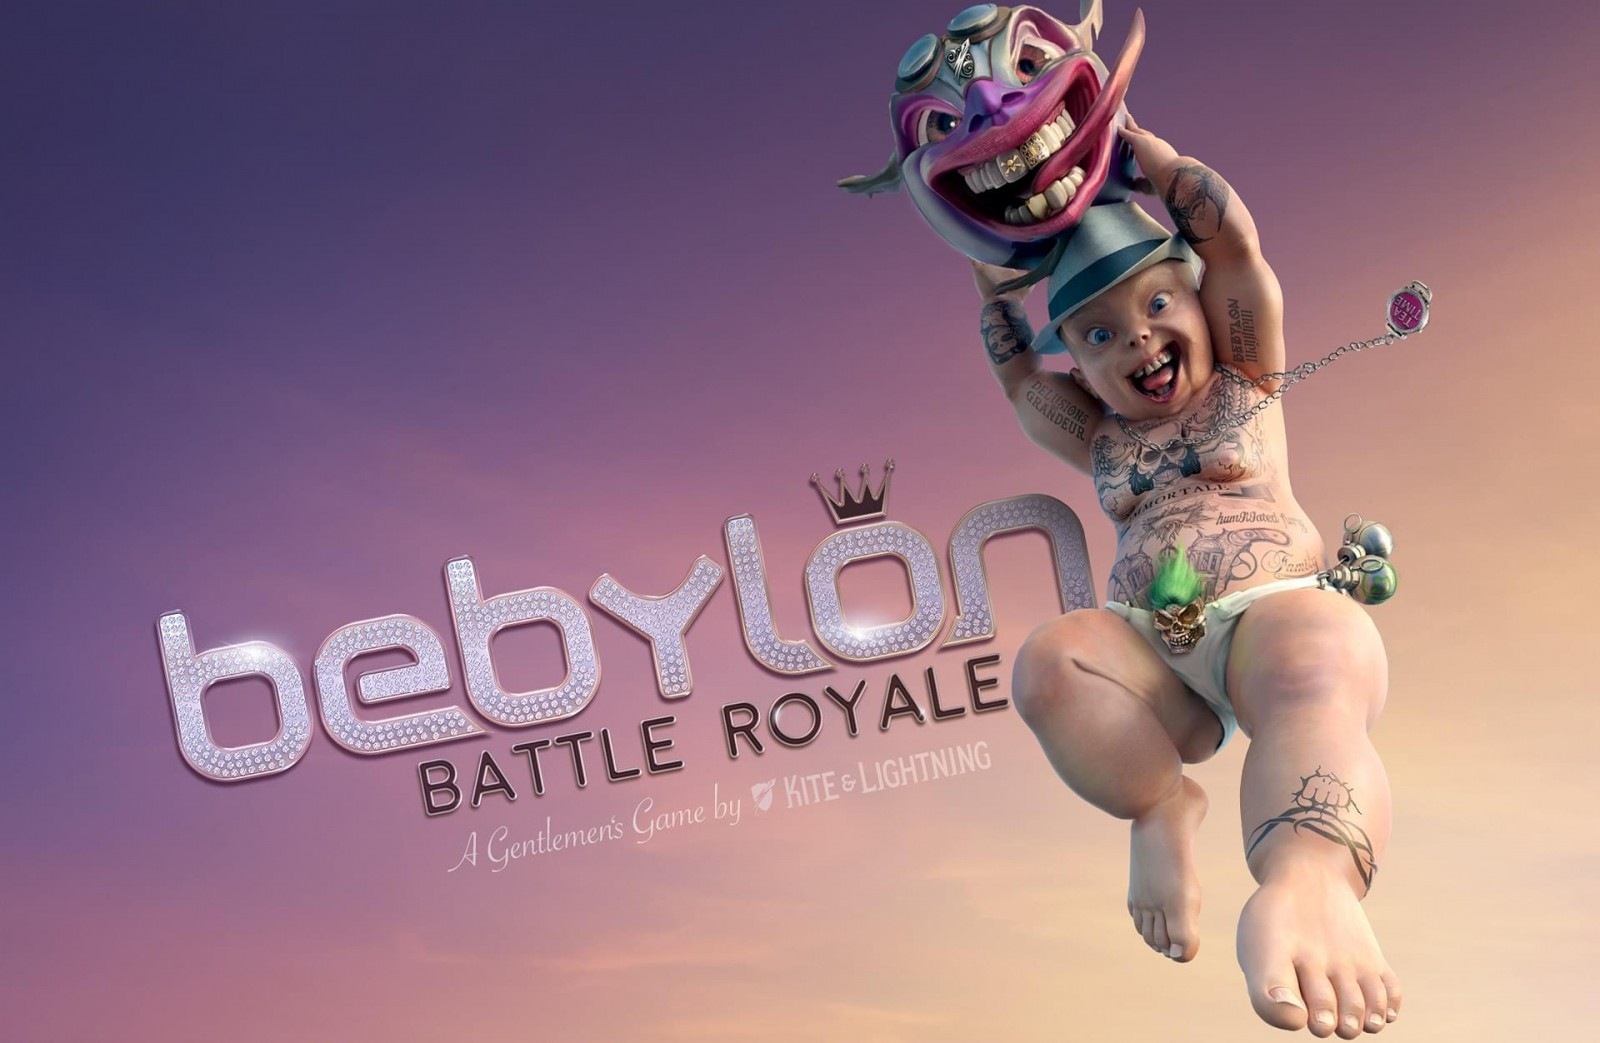 Игра Bebylon Battle Royale выйдет в 2018 году на HTC Vive и Oculus Rift